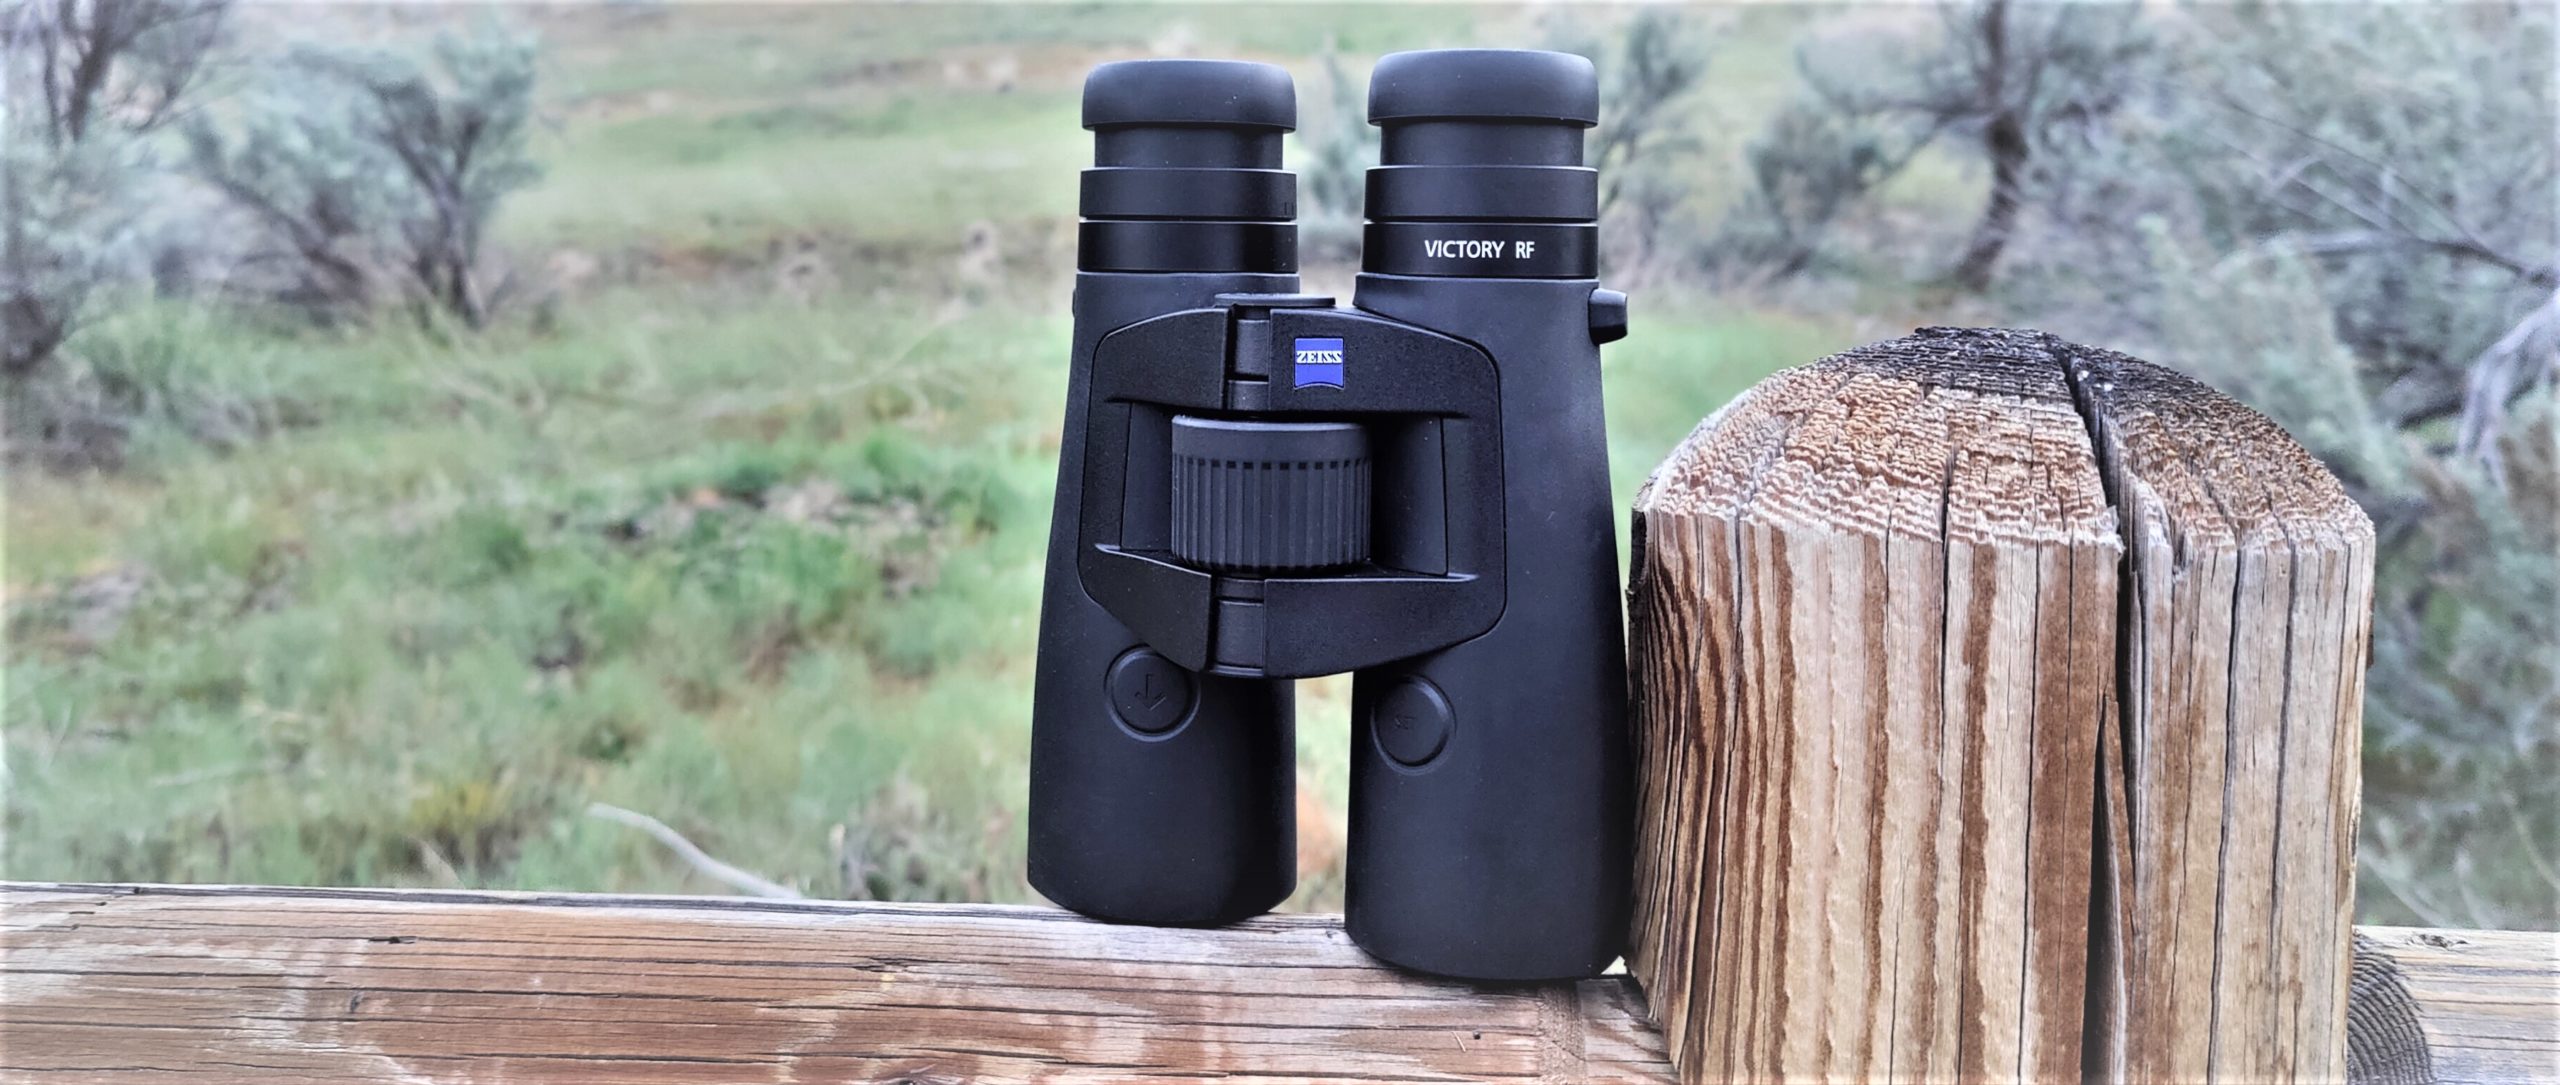 lærken Høne følgeslutning Zeiss Victory RF 10x42 Review | Elite Rangefinding Binoculars - Backwoods  Pursuit